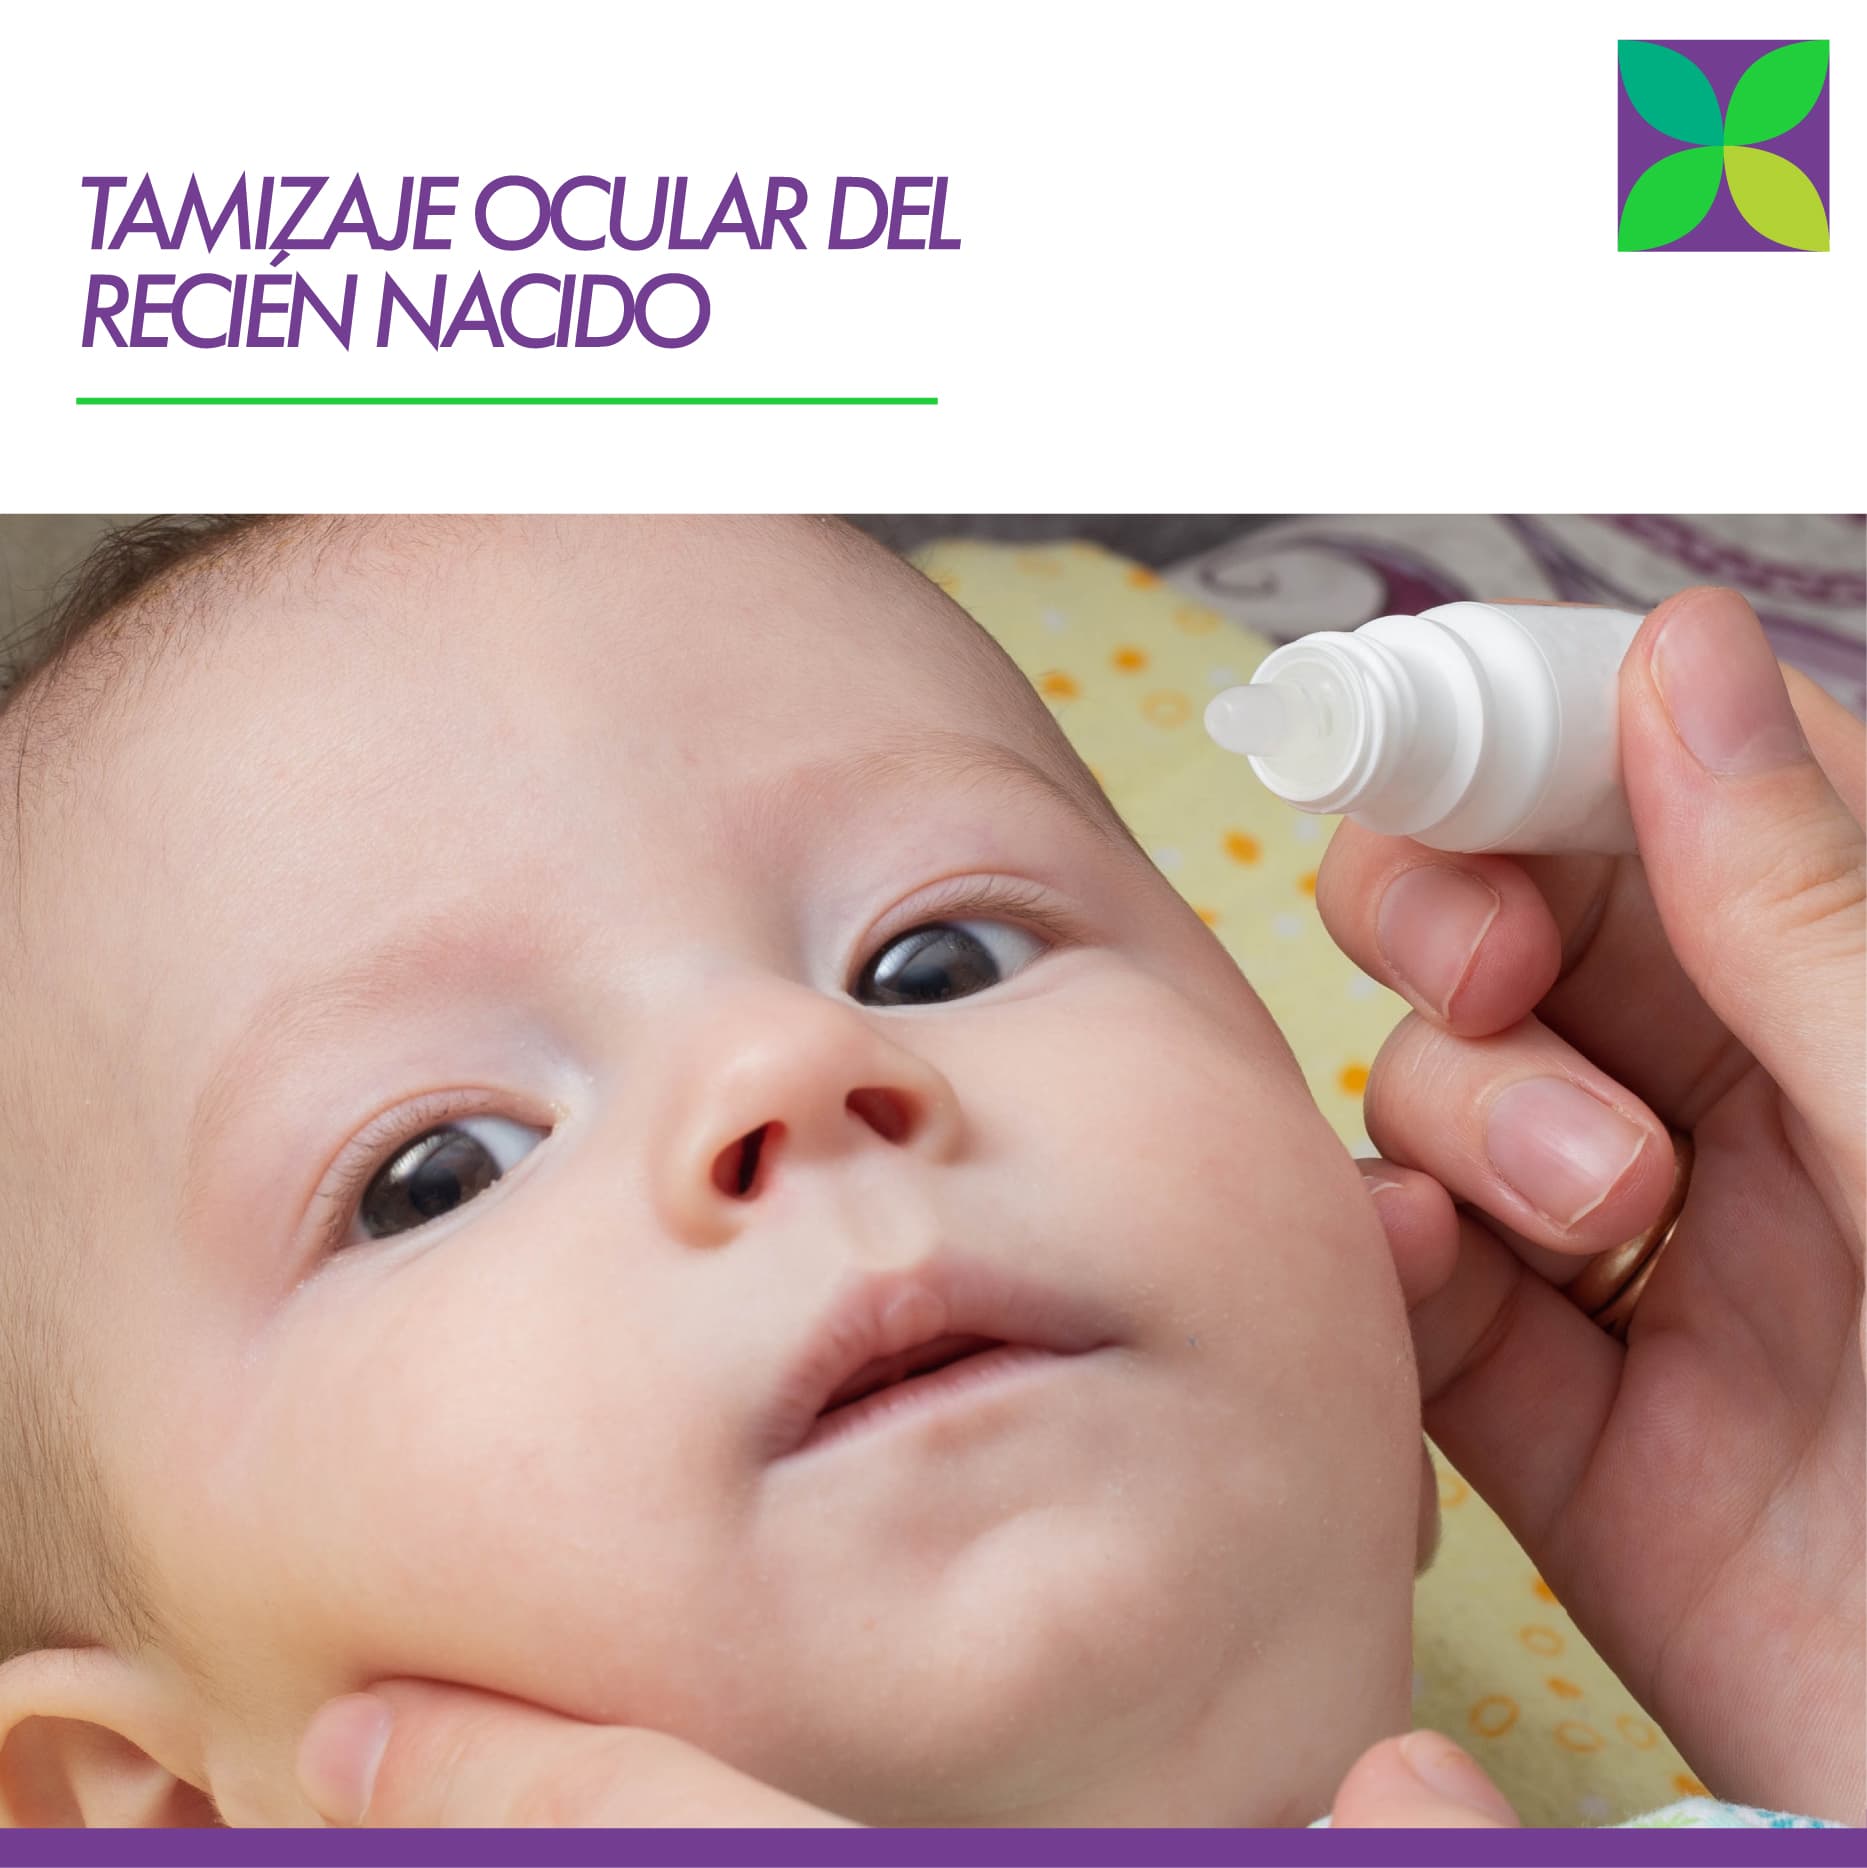 Programa Tamizaje Ocular Del Recién Nacido